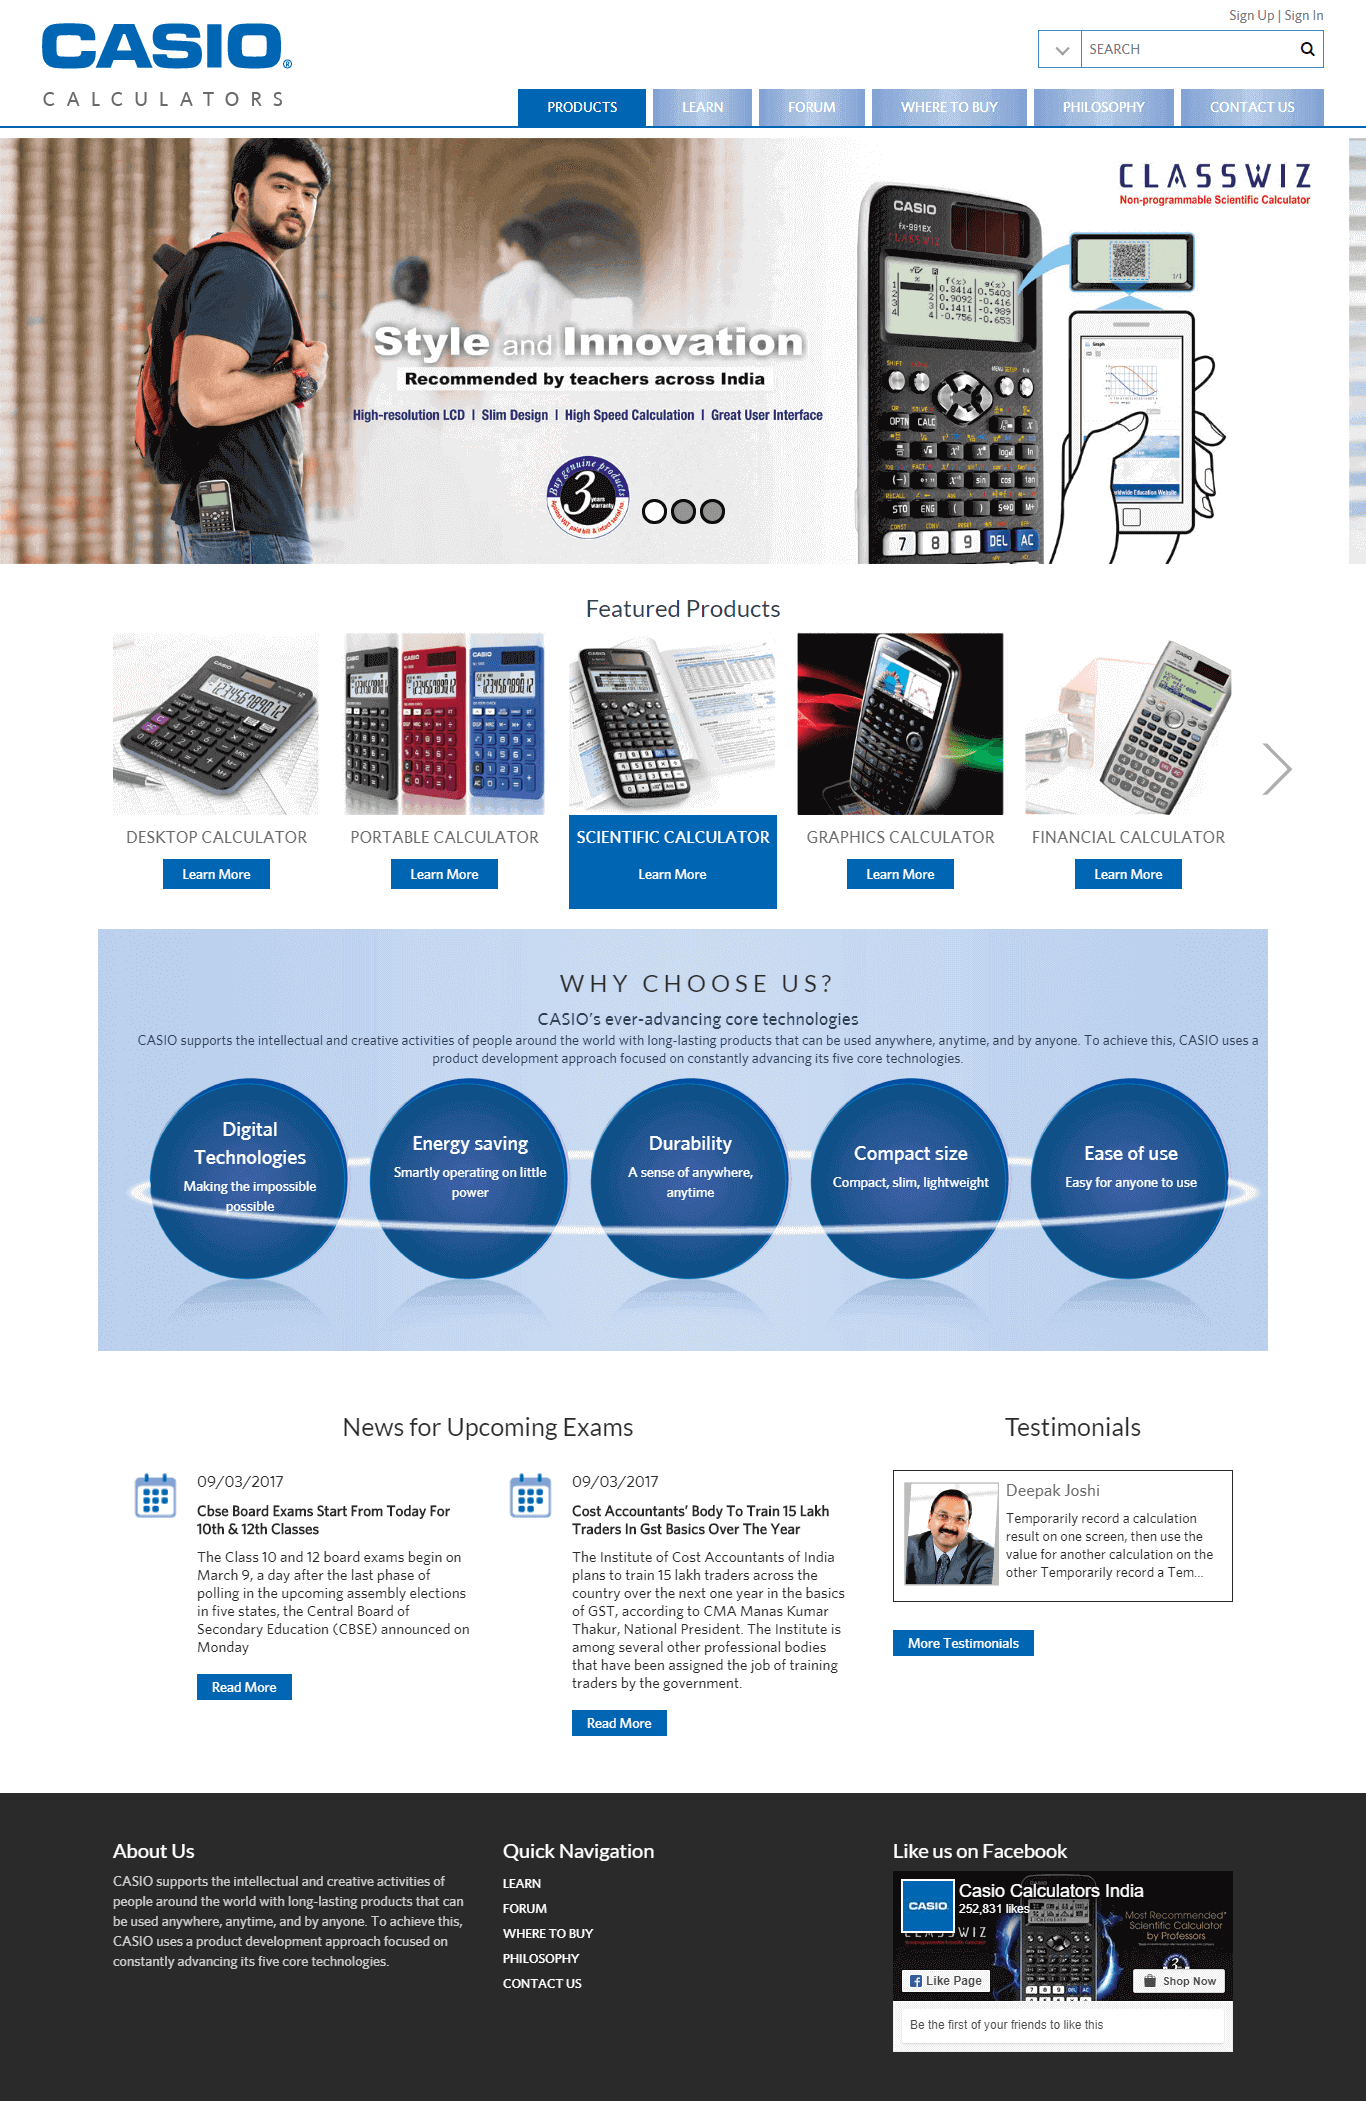 Casio Calculators India